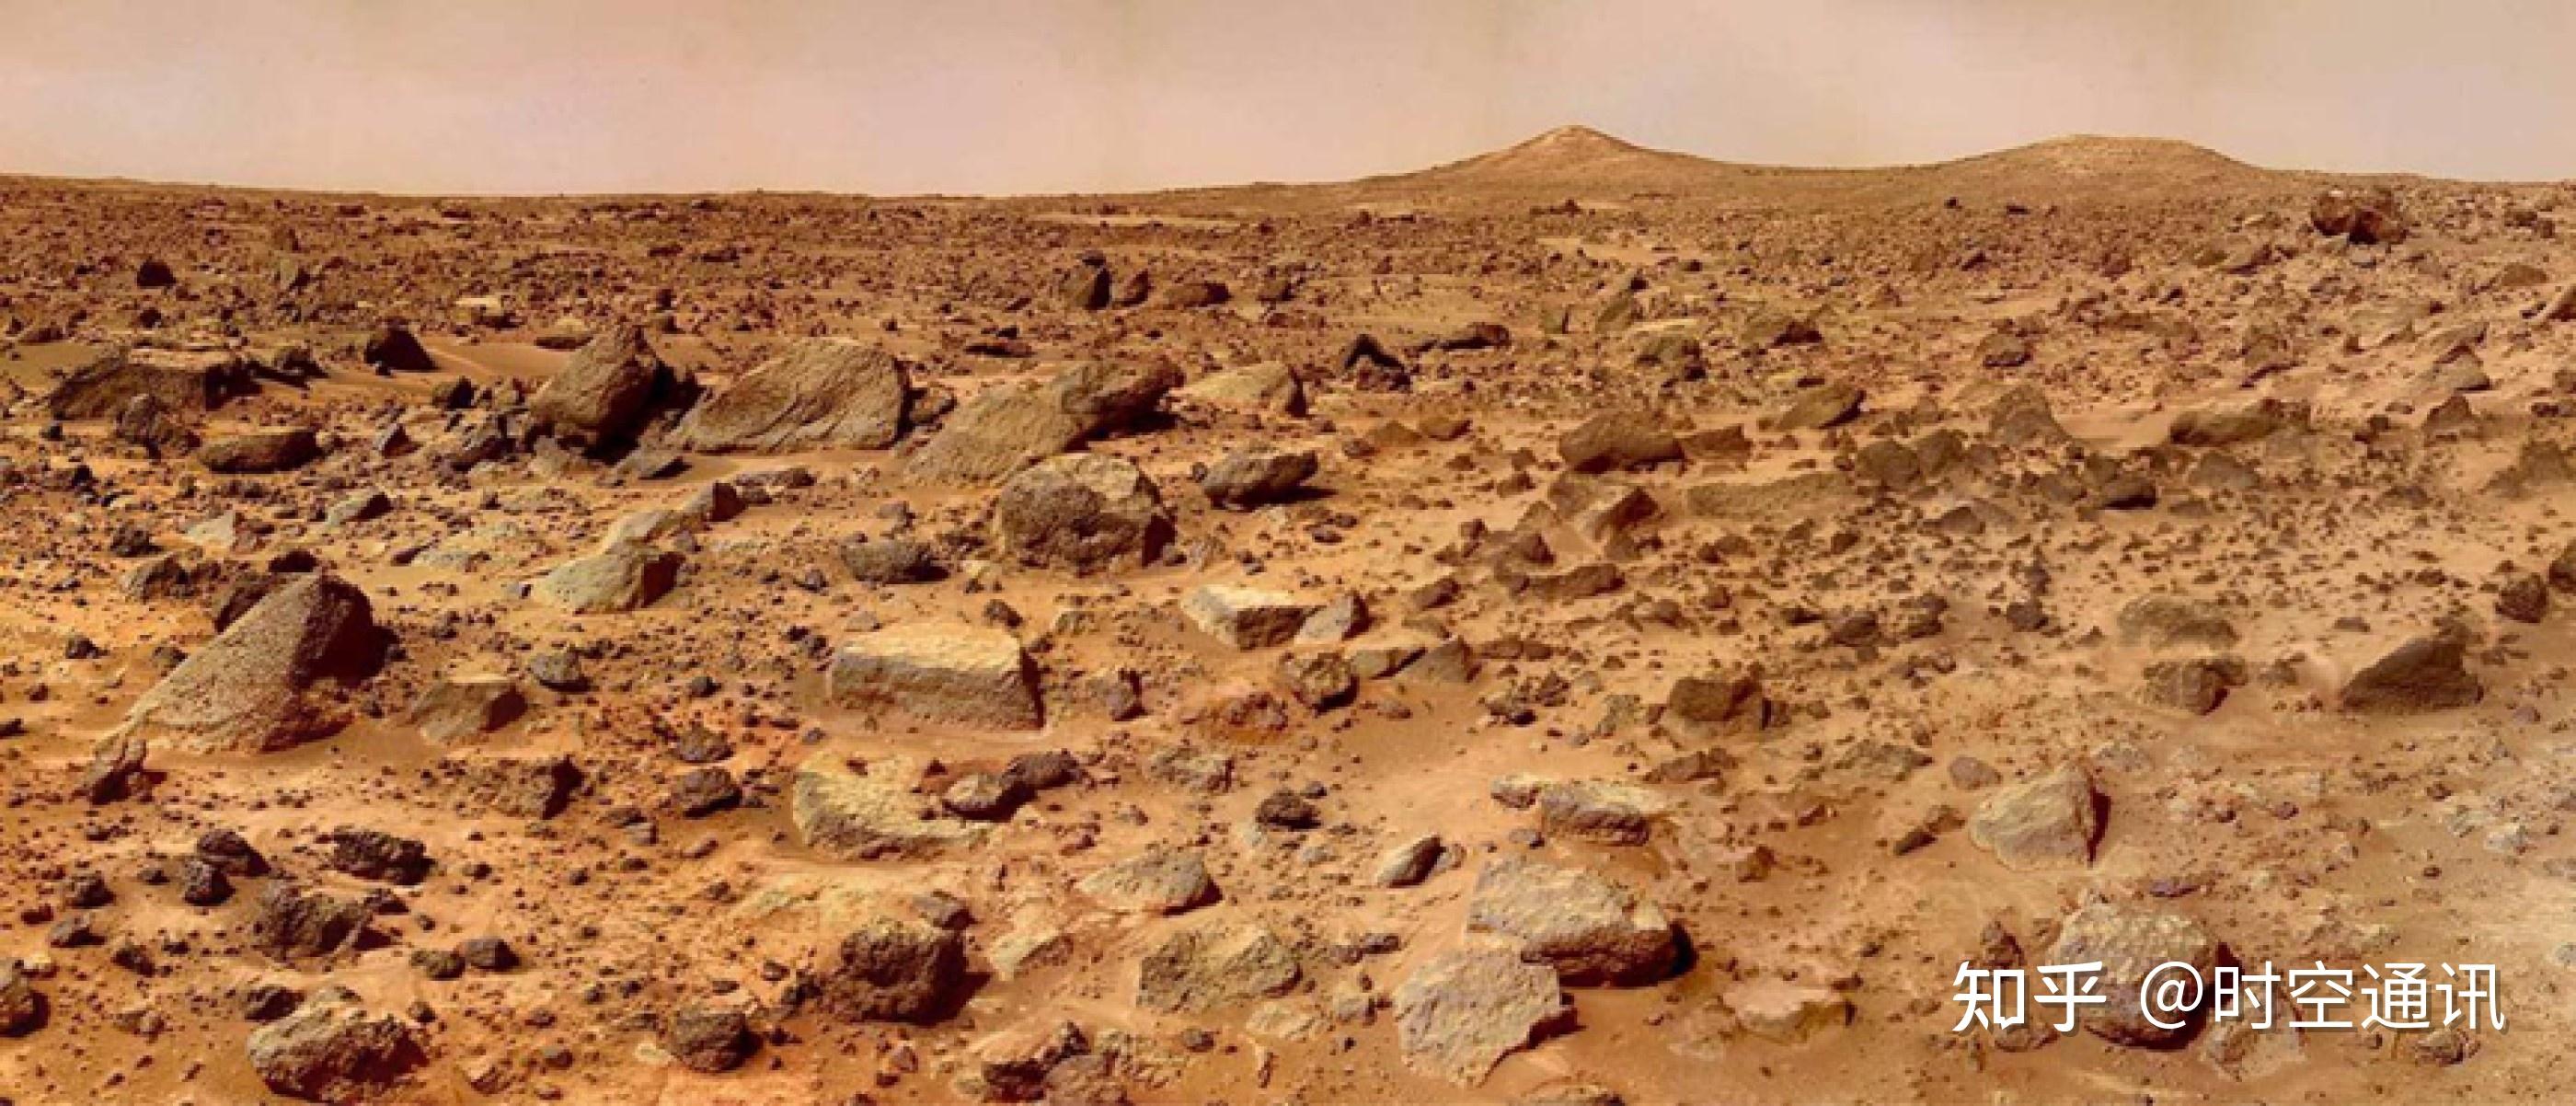 梦想成真!为移民火星做准备,"星船"20年内将在火星建设城市